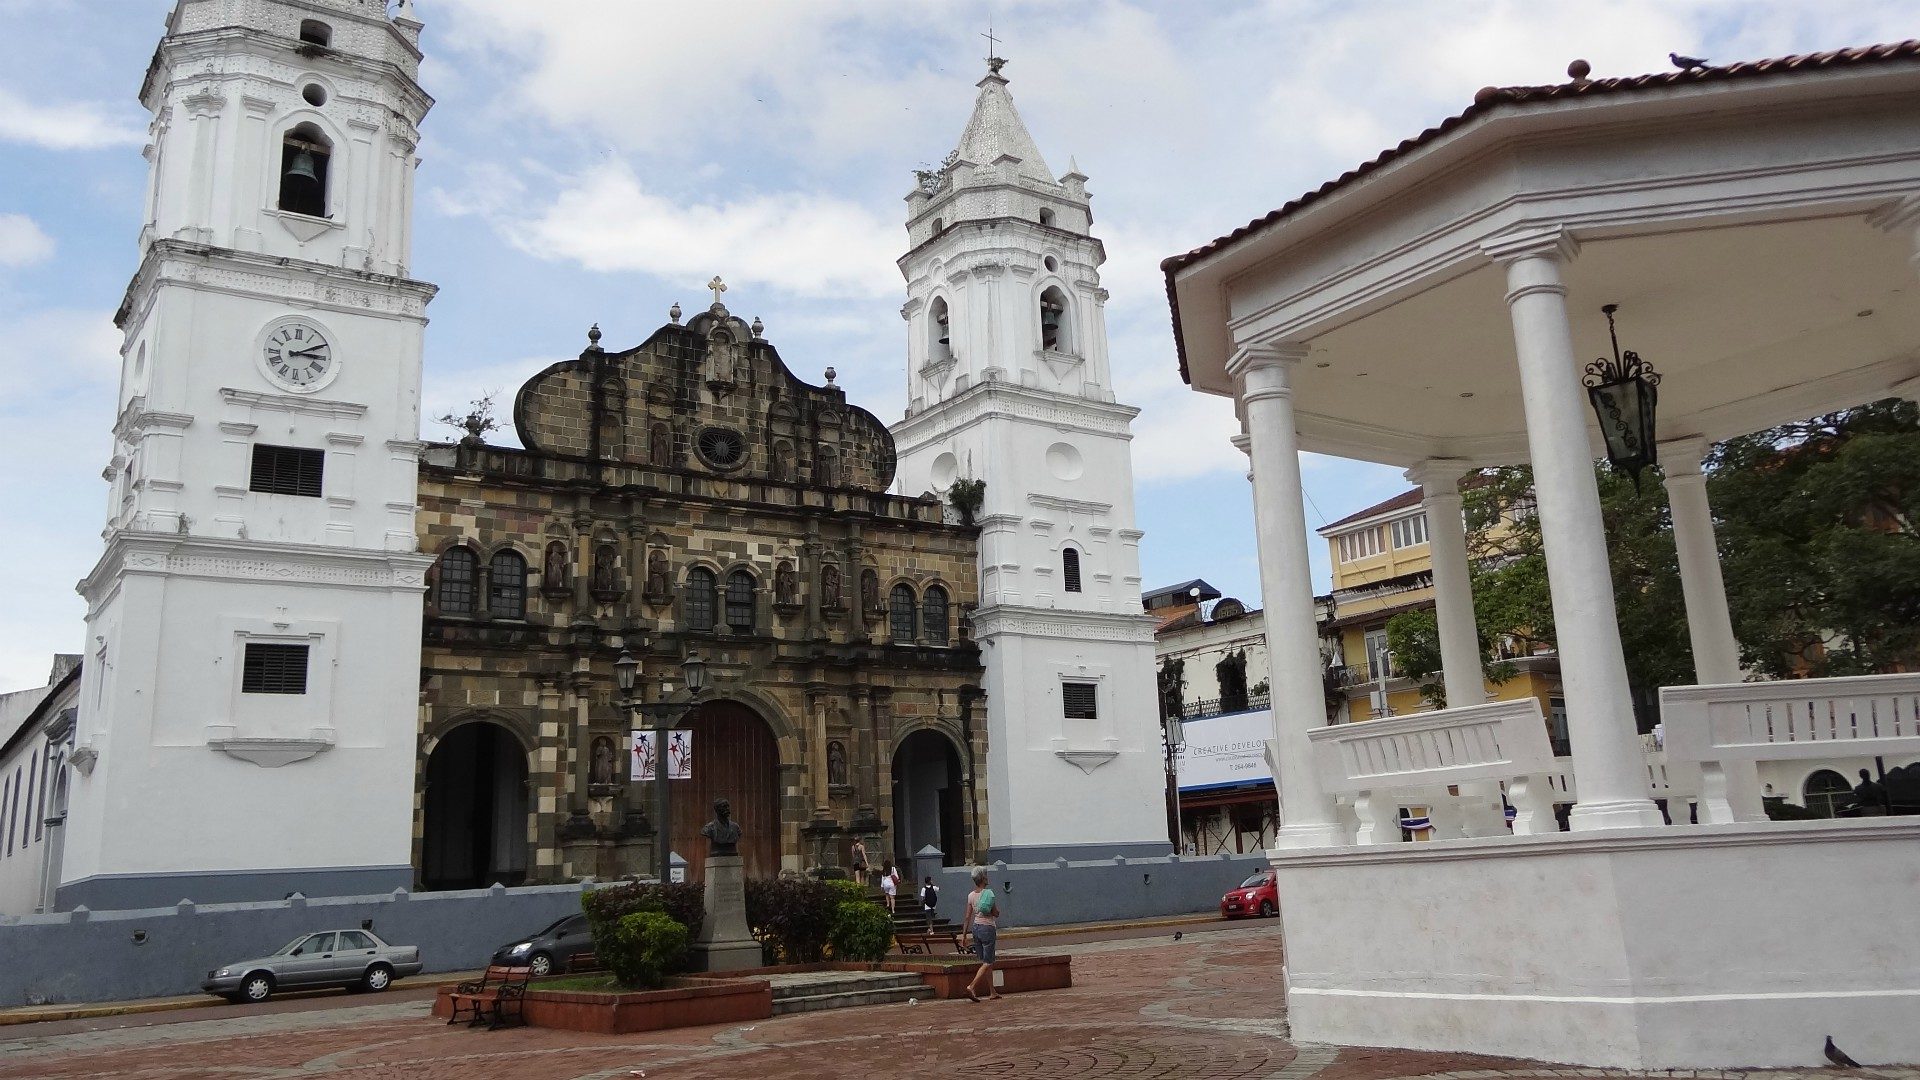 La cathédrale de Panama a subi de récents travaux de rénovation | ©Dave Lonsdale/Flickr/CC BY 2.0